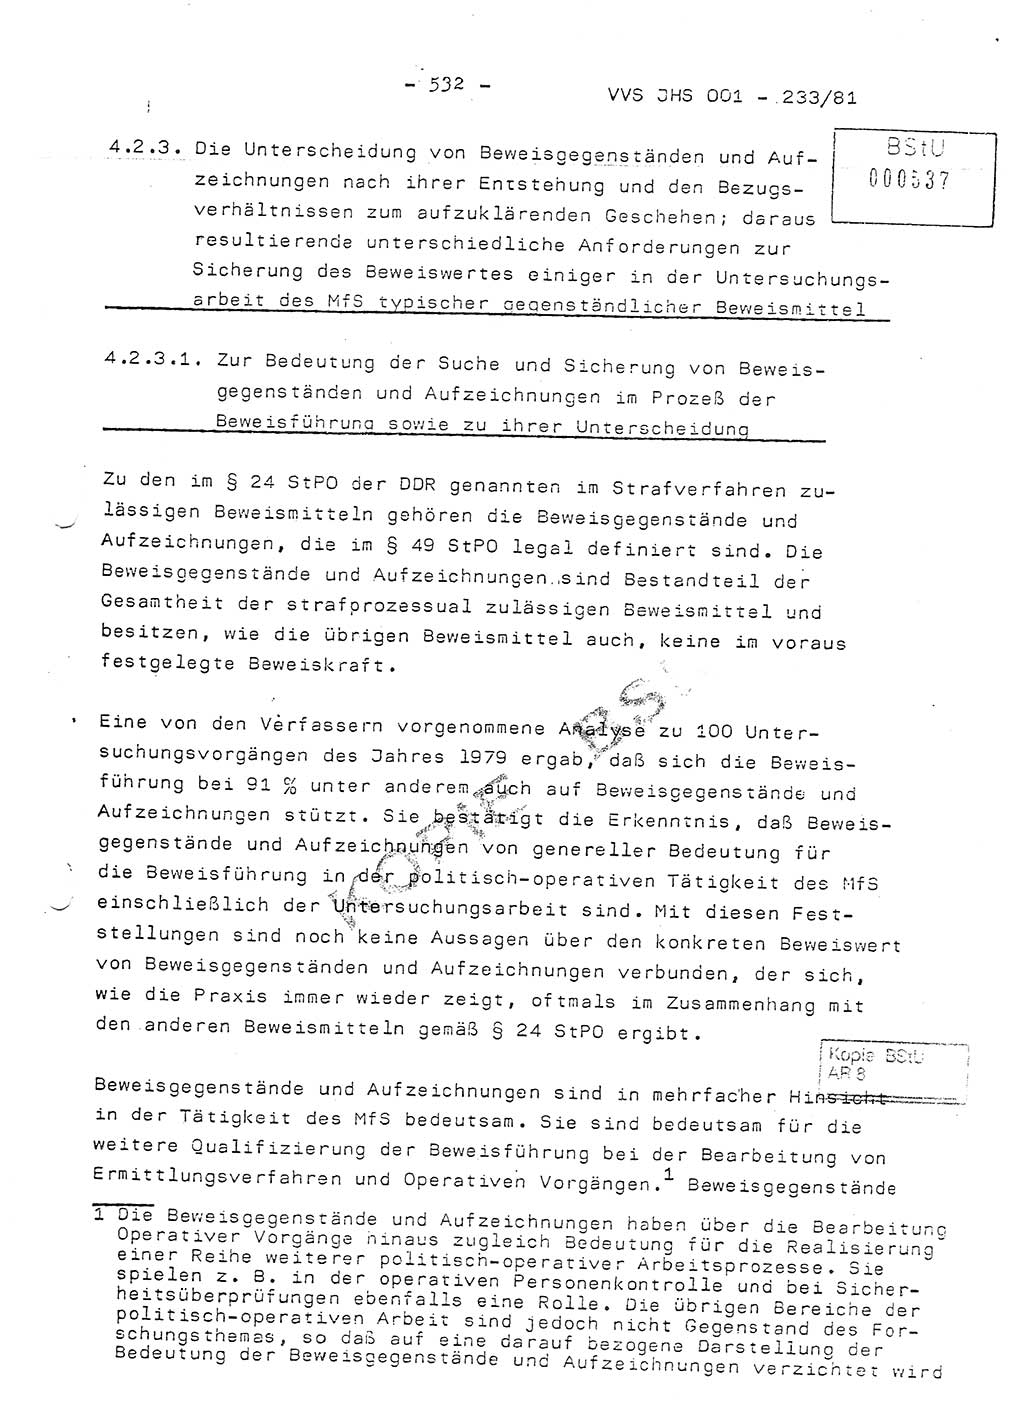 Dissertation Oberstleutnant Horst Zank (JHS), Oberstleutnant Dr. Karl-Heinz Knoblauch (JHS), Oberstleutnant Gustav-Adolf Kowalewski (HA Ⅸ), Oberstleutnant Wolfgang Plötner (HA Ⅸ), Ministerium für Staatssicherheit (MfS) [Deutsche Demokratische Republik (DDR)], Juristische Hochschule (JHS), Vertrauliche Verschlußsache (VVS) o001-233/81, Potsdam 1981, Blatt 532 (Diss. MfS DDR JHS VVS o001-233/81 1981, Bl. 532)